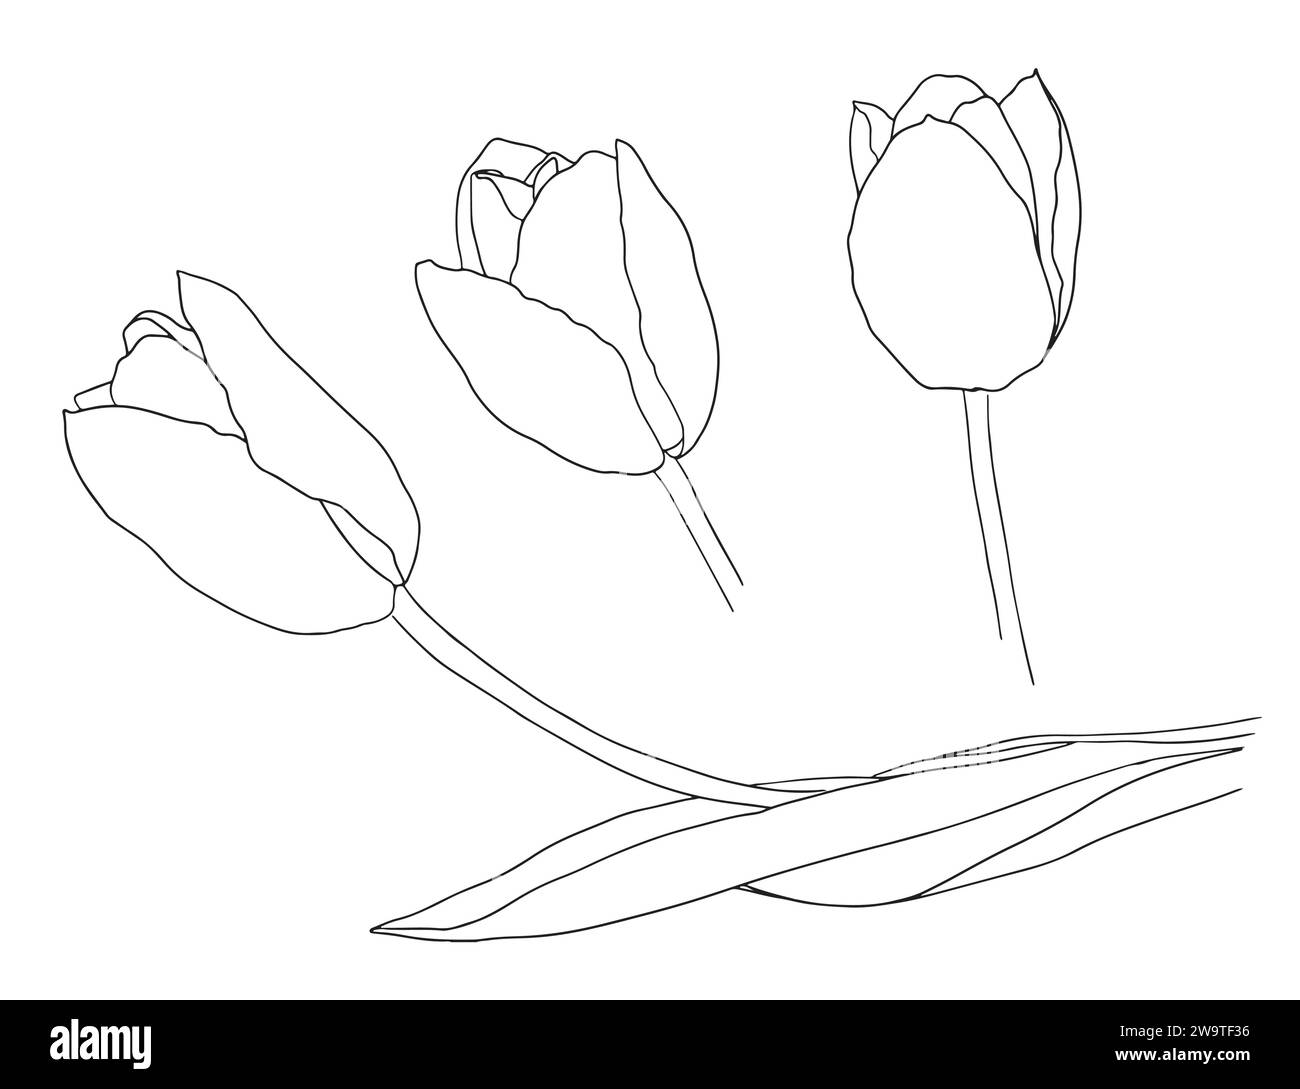 Tulipes définir le dessin au trait. Ligne de fleurs abstraite. Dessin de contour minimaliste de tulipe. Dessin au trait continu de tulipe de fleur.esquisse dessinée à la main de Illustration de Vecteur